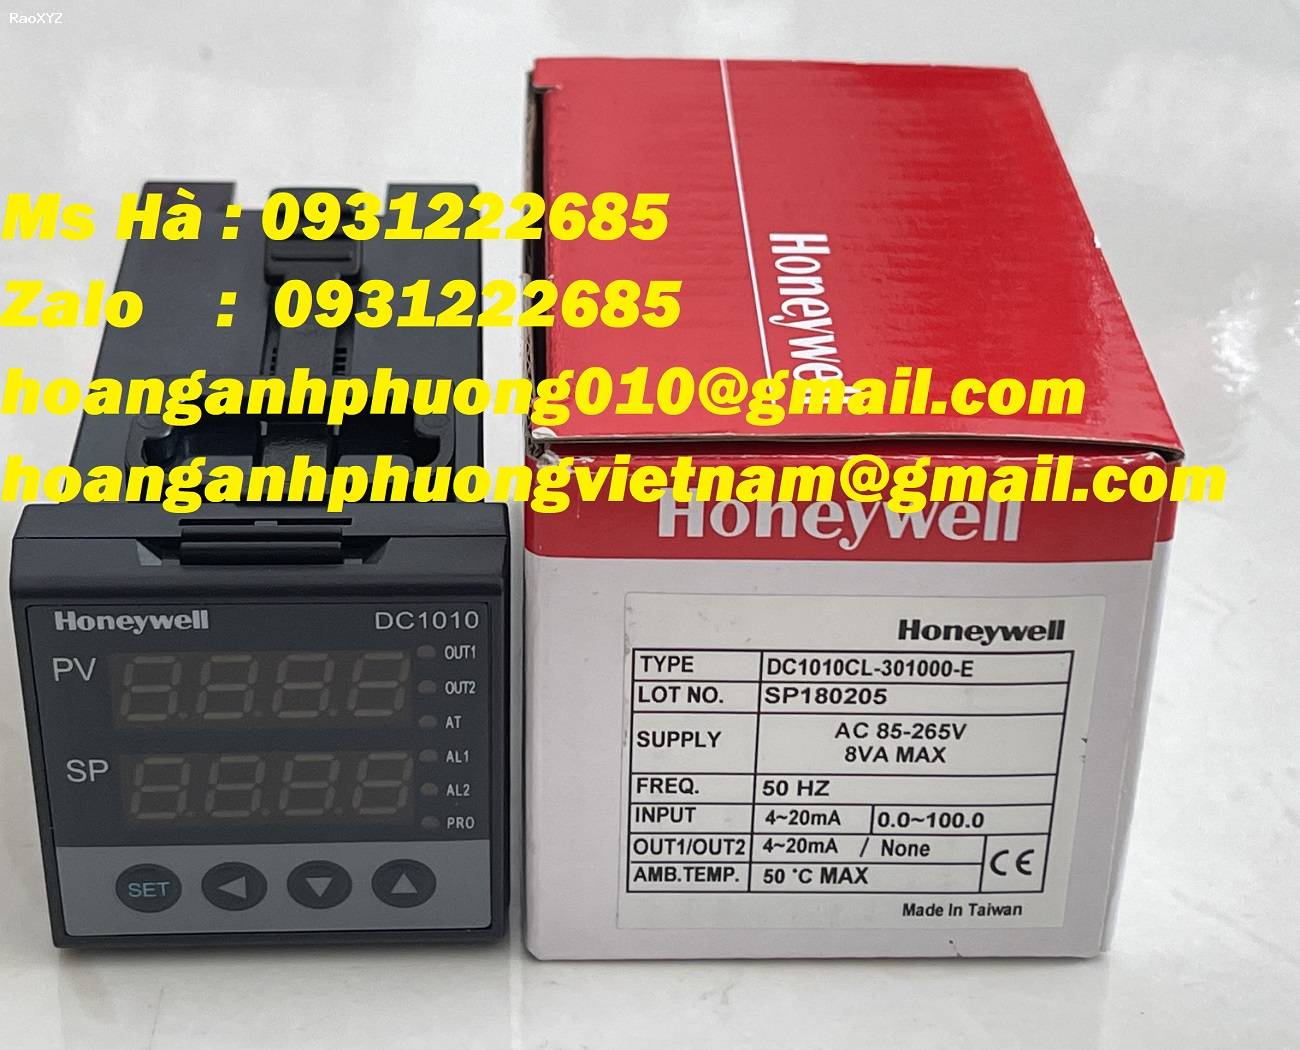 Honeywell - Bộ điều khiển nhiệt độ - mới 100% - DC1010CL-301000-E